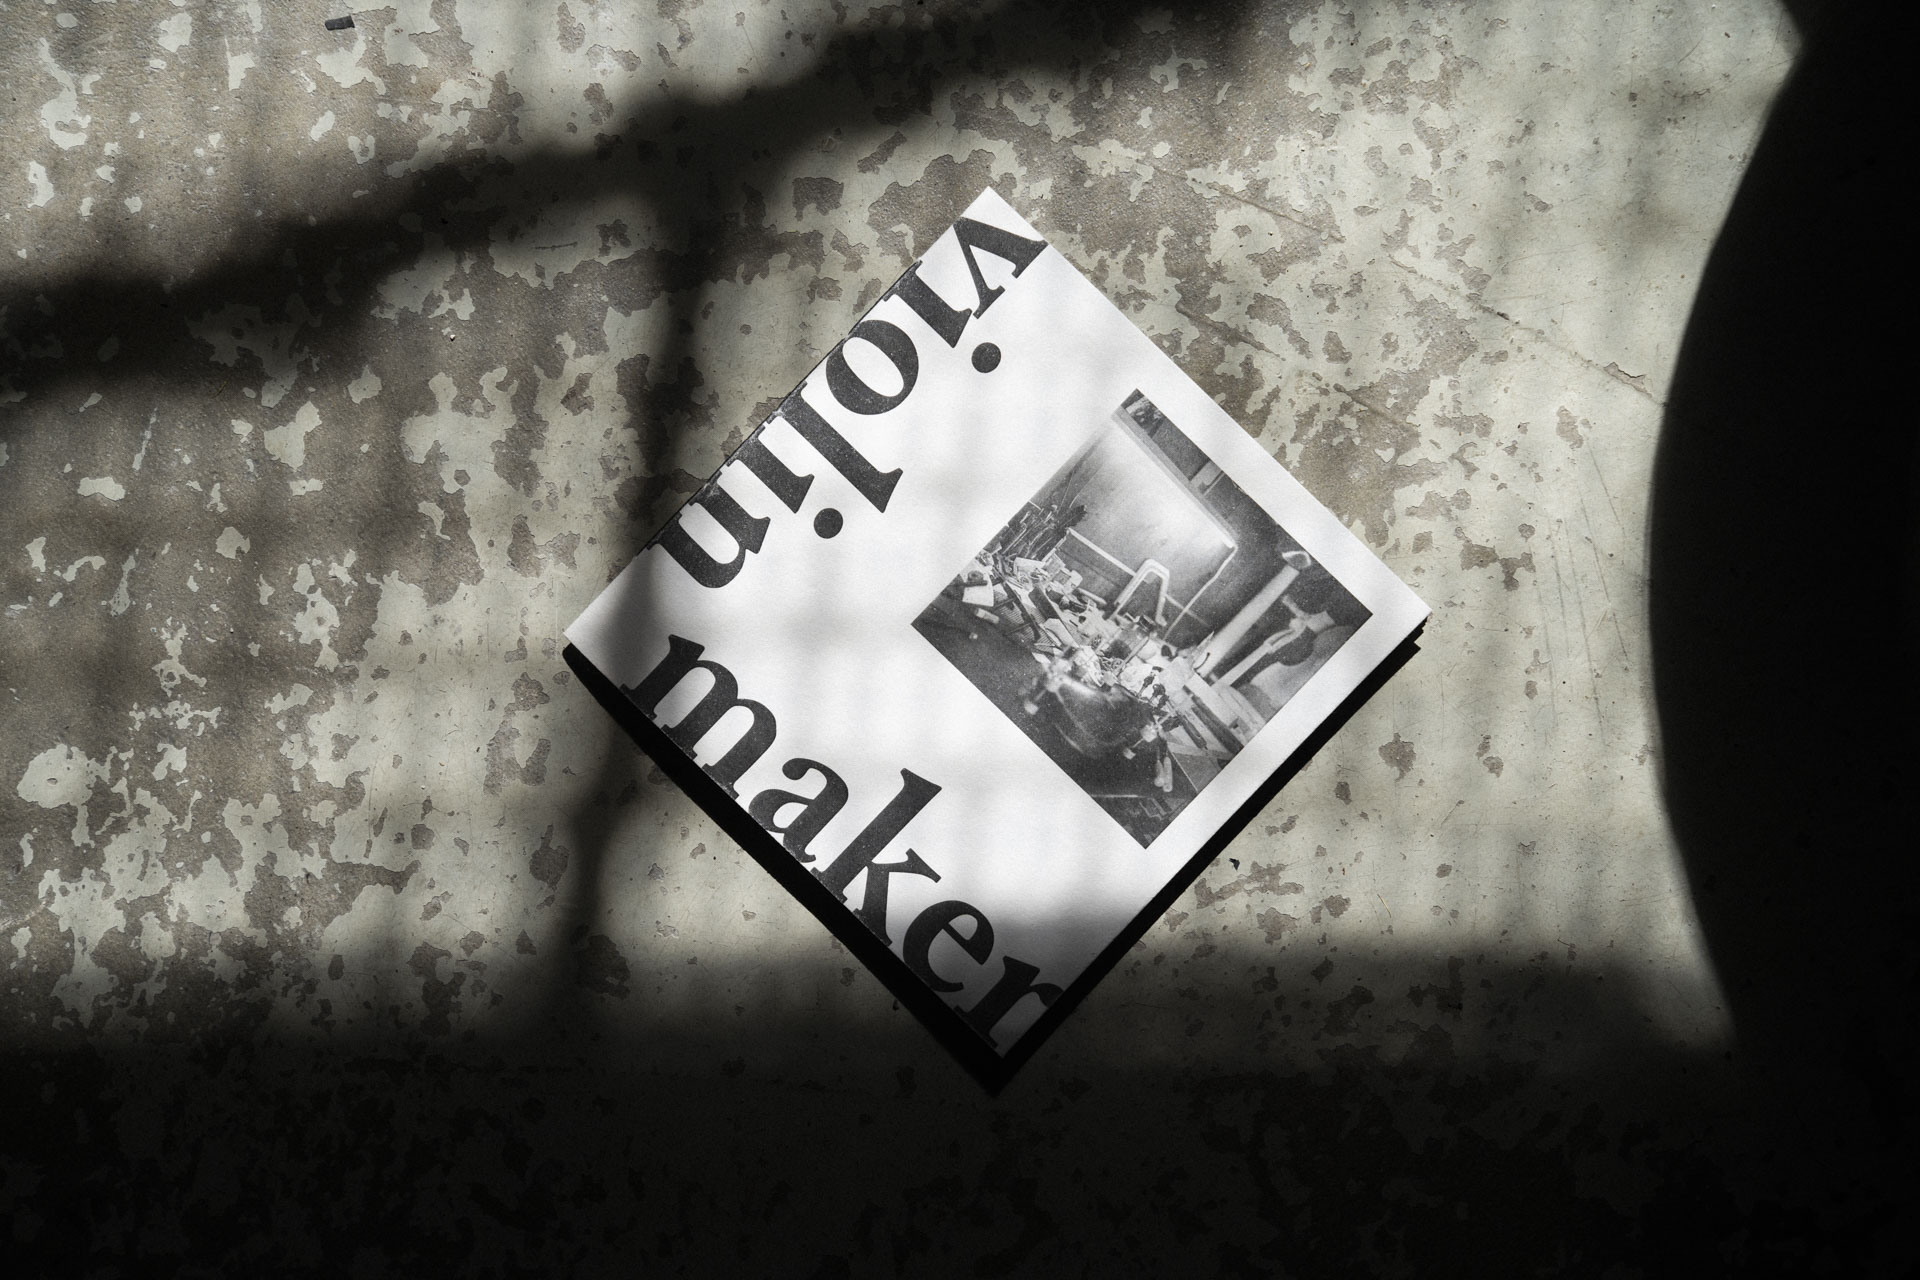 Nahaufnahme von dem Violin Maker Fotobuch auf einem rustikalen Steinboden mit Schatten.